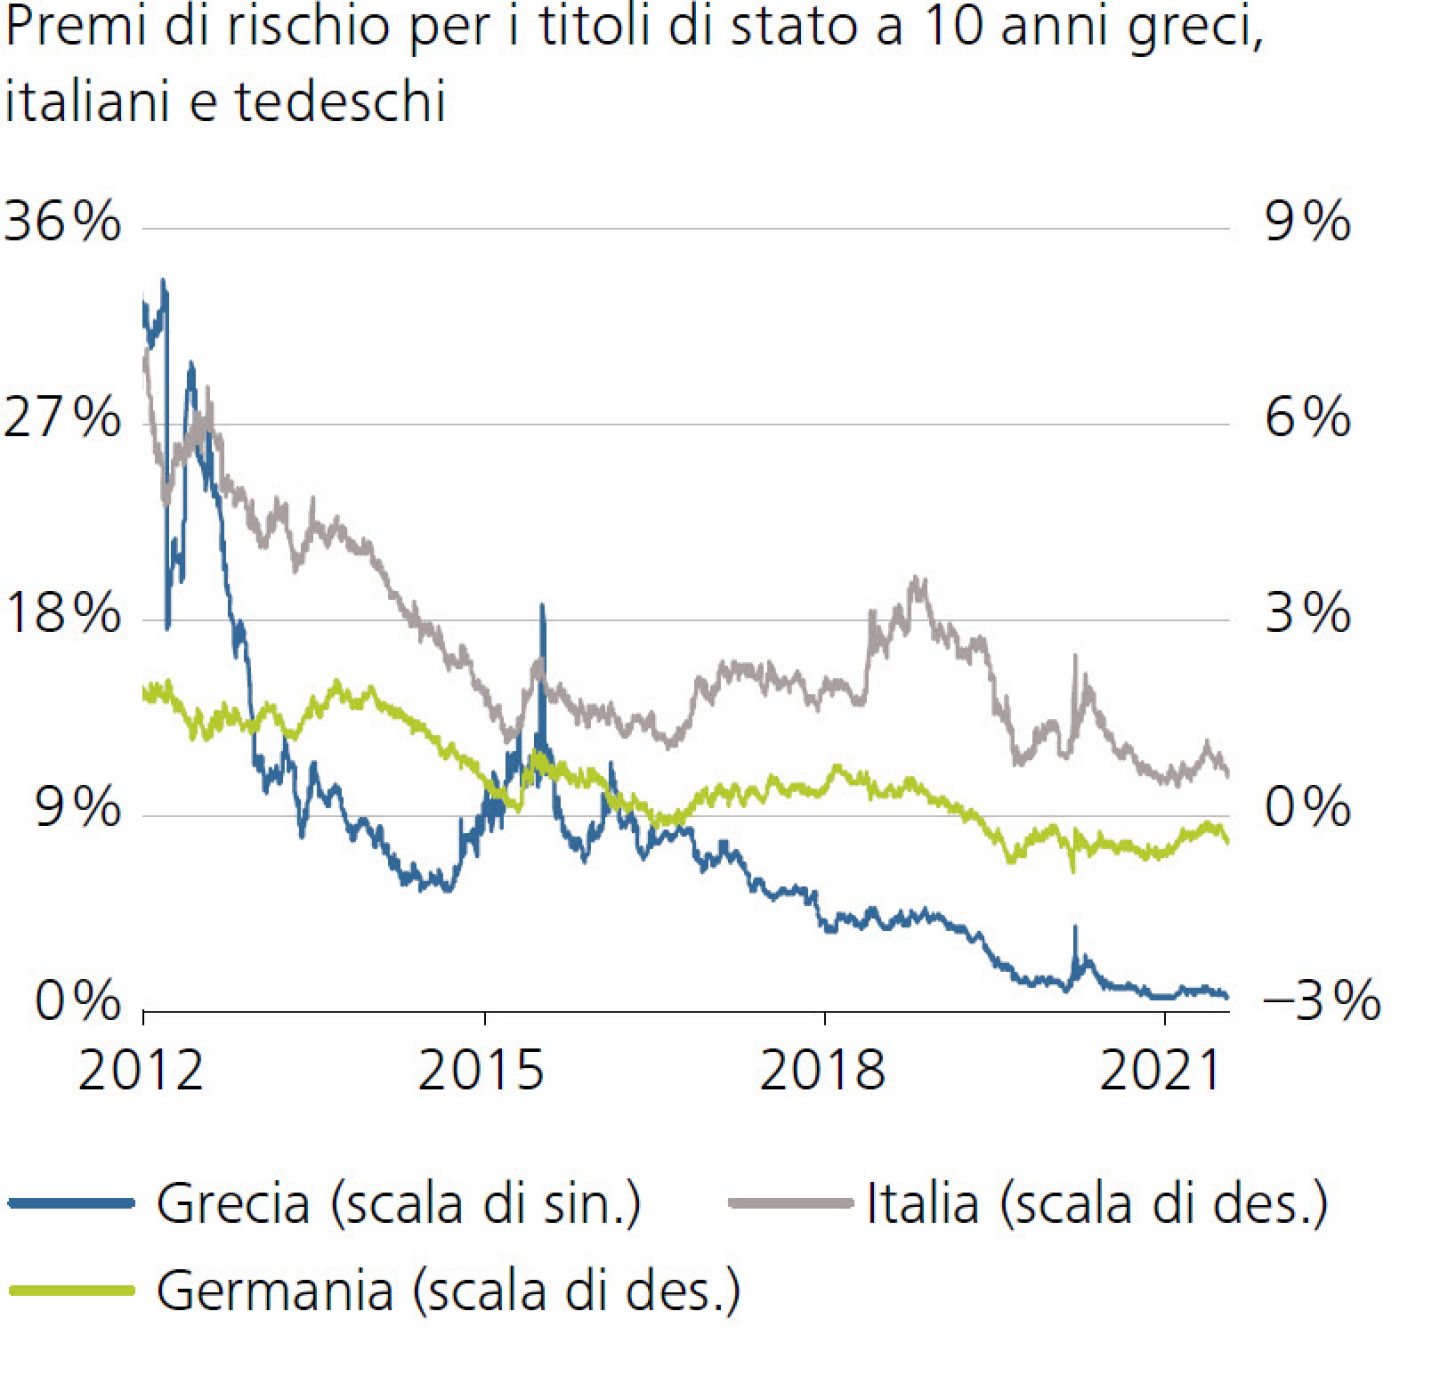 Premi di rischio per i titoli di stato a 10 anni greci, italiani e tedeschi